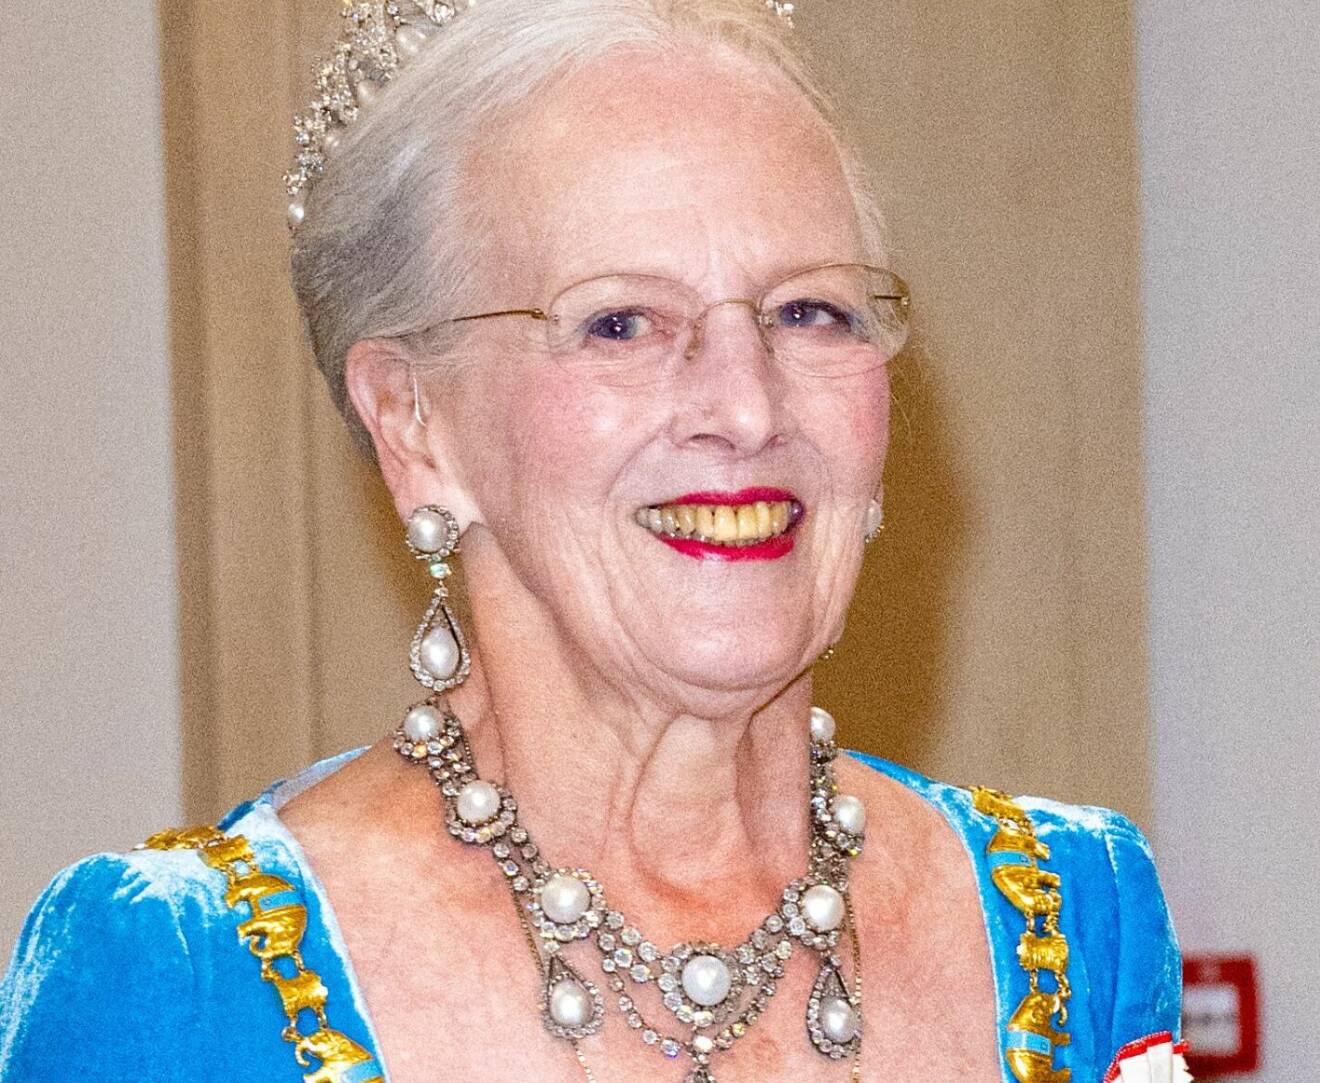 Drottning Margrethe gillar pytt i panna med bearnaisesås